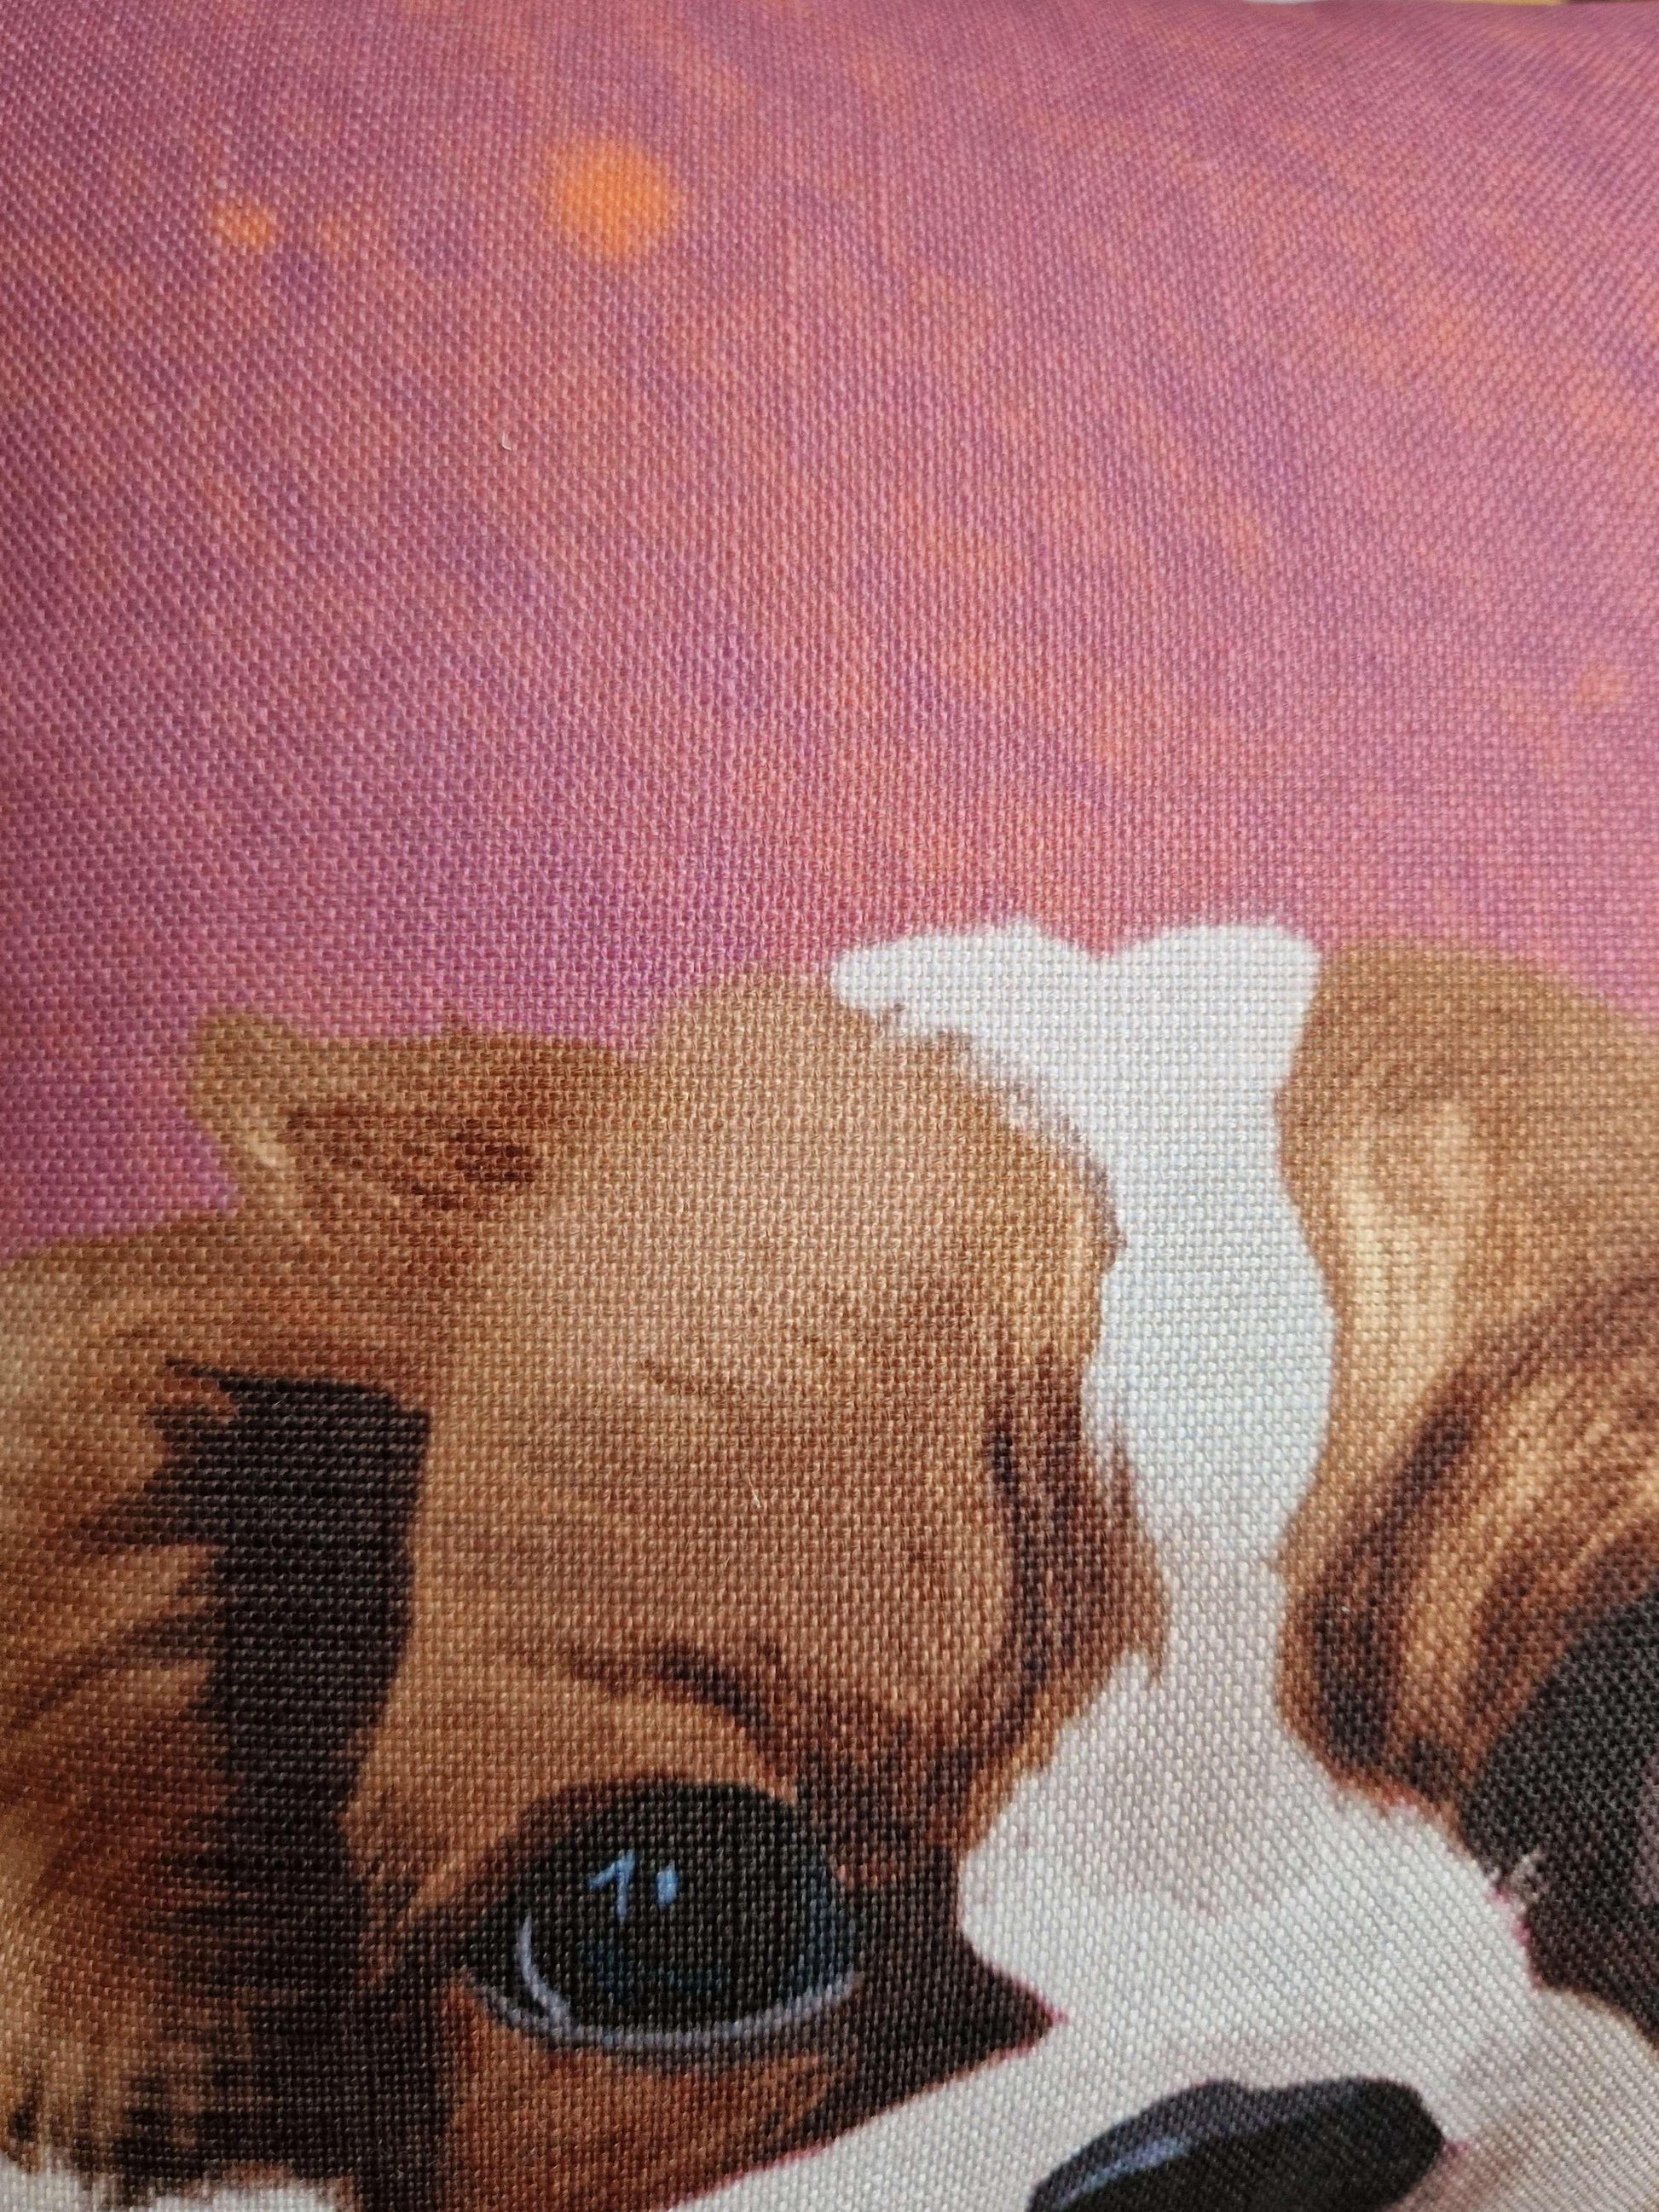 Pet art linen cushion - close-up